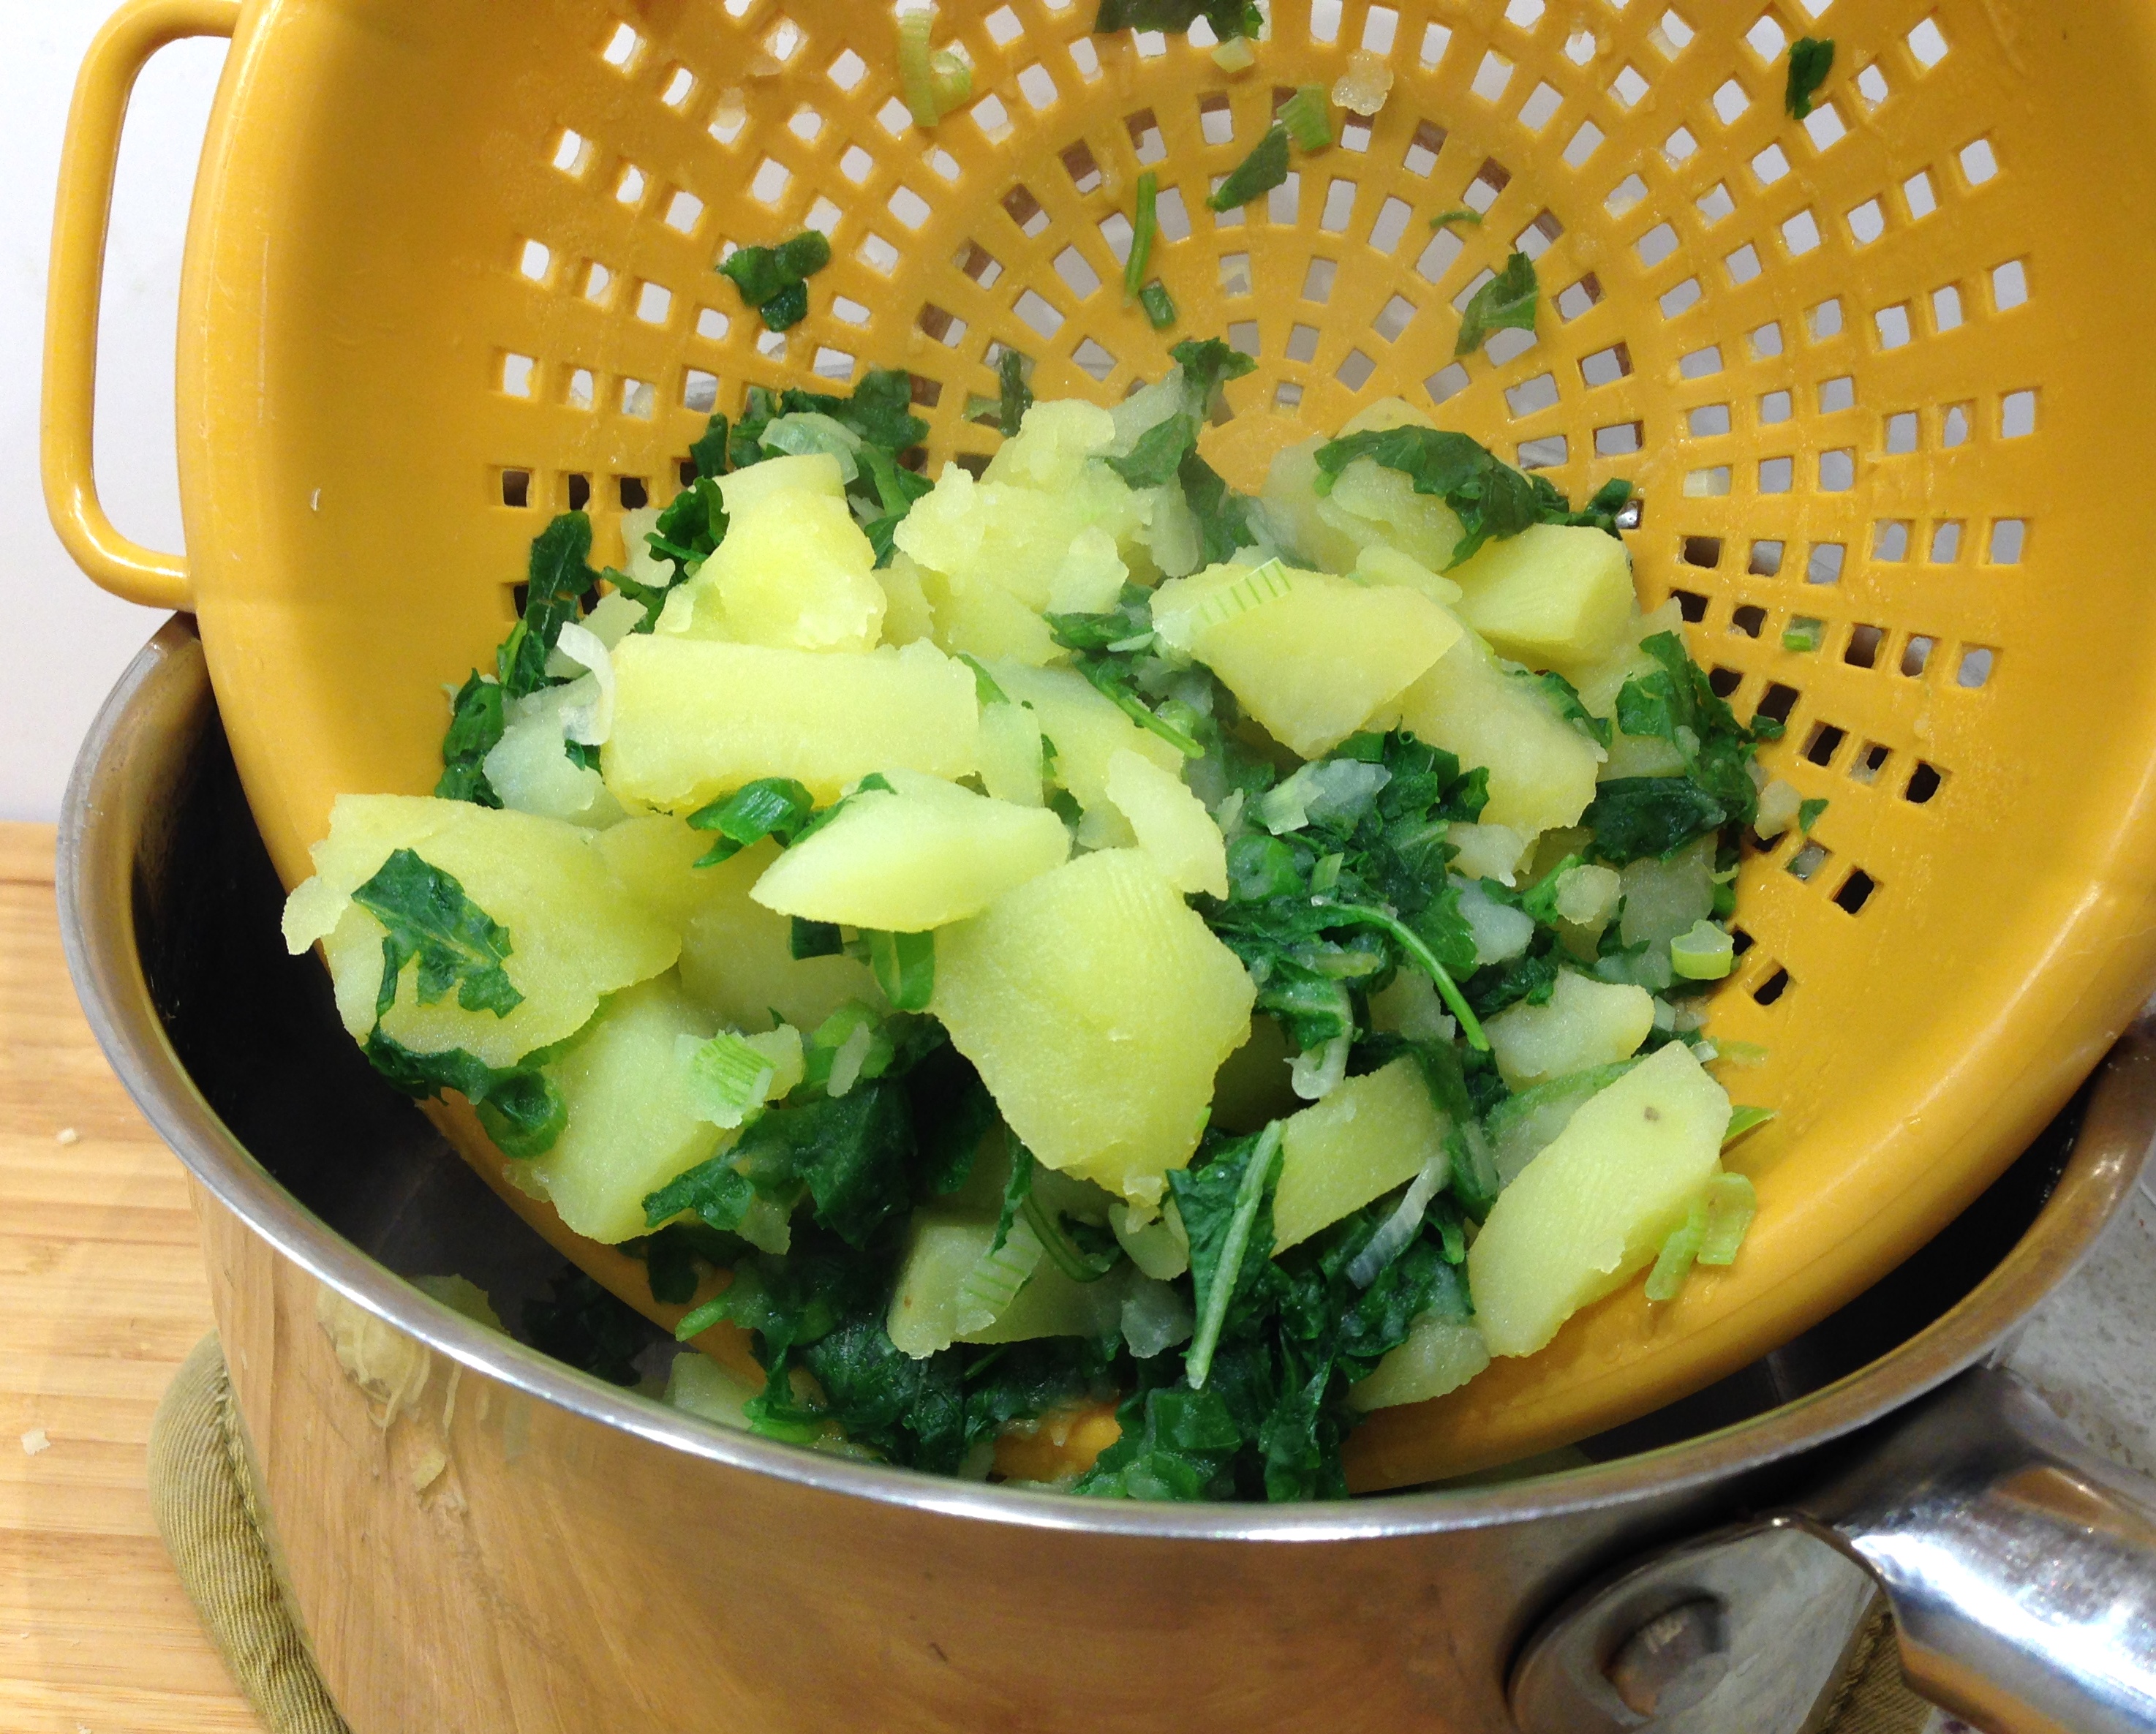 Drain potato kale